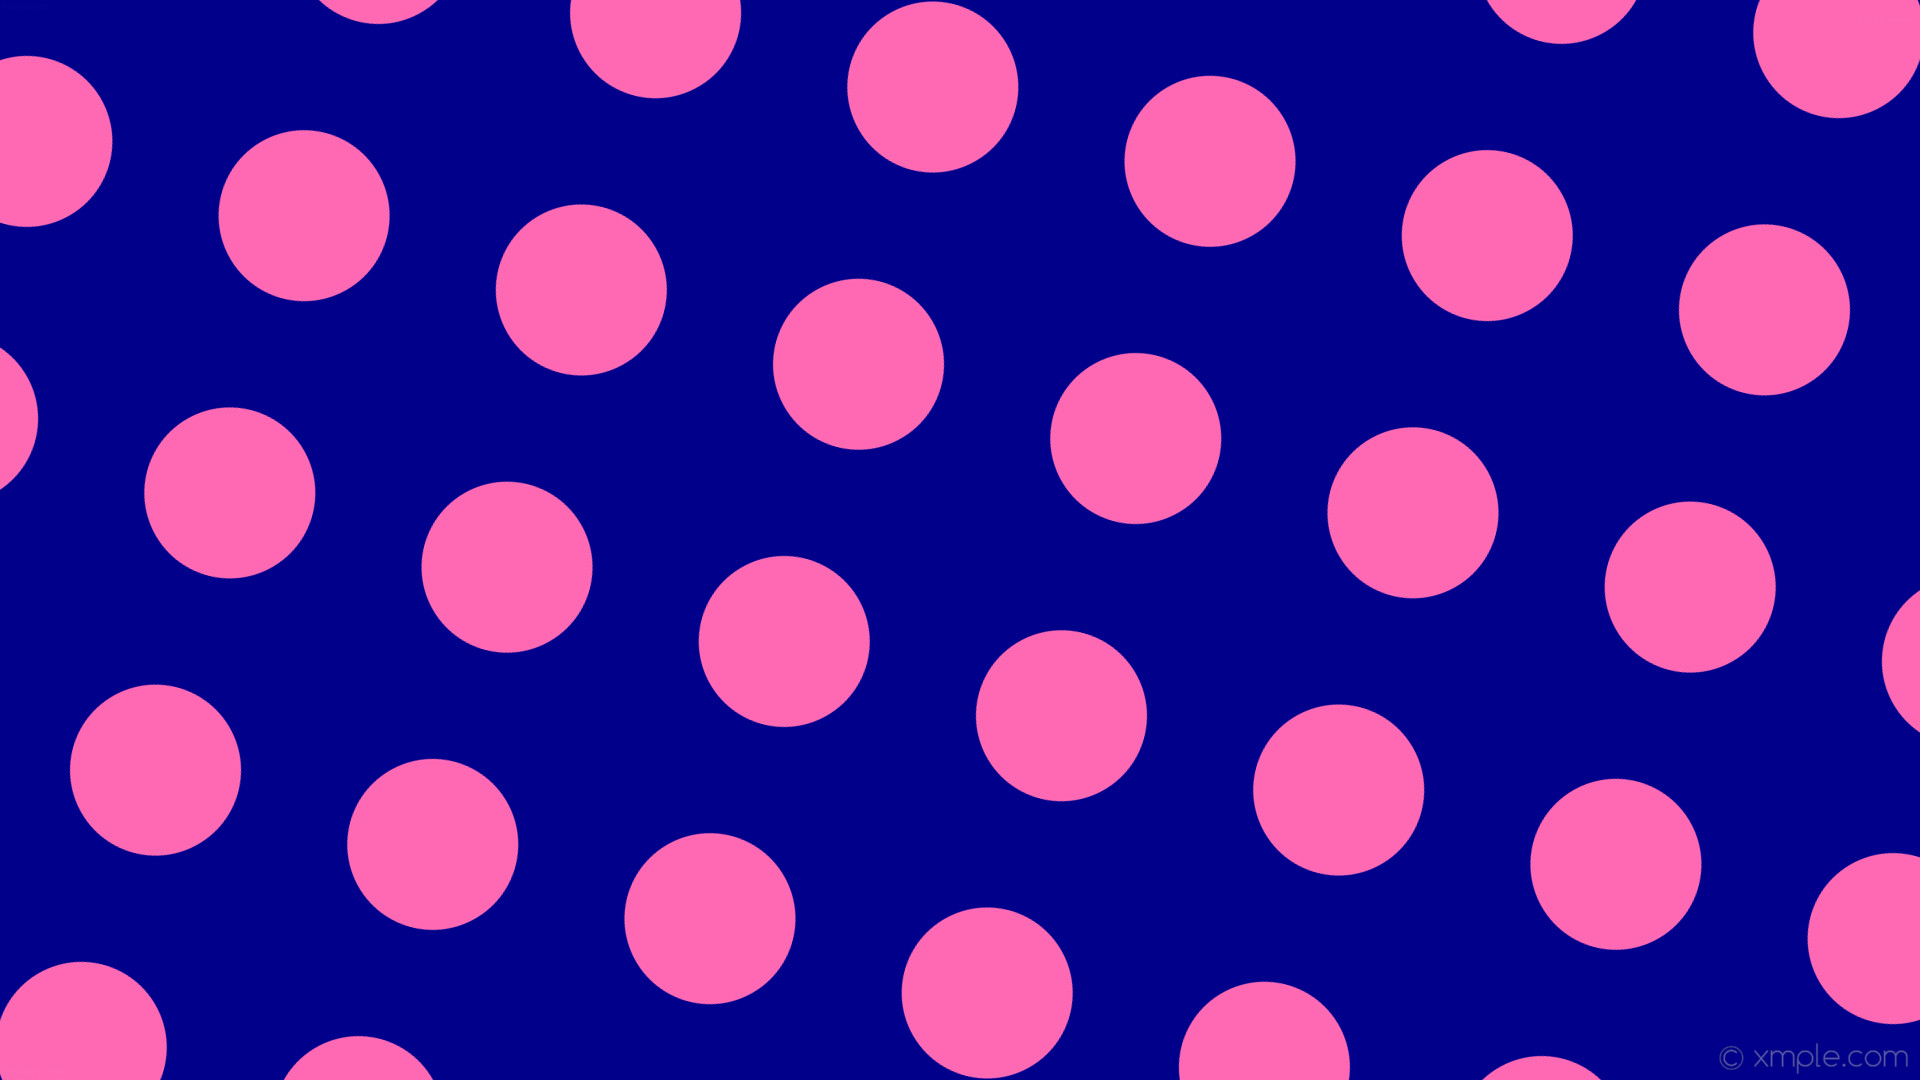 Wallpaper spots blue pink polka dots dark blue hot pink b #ff69b4 165